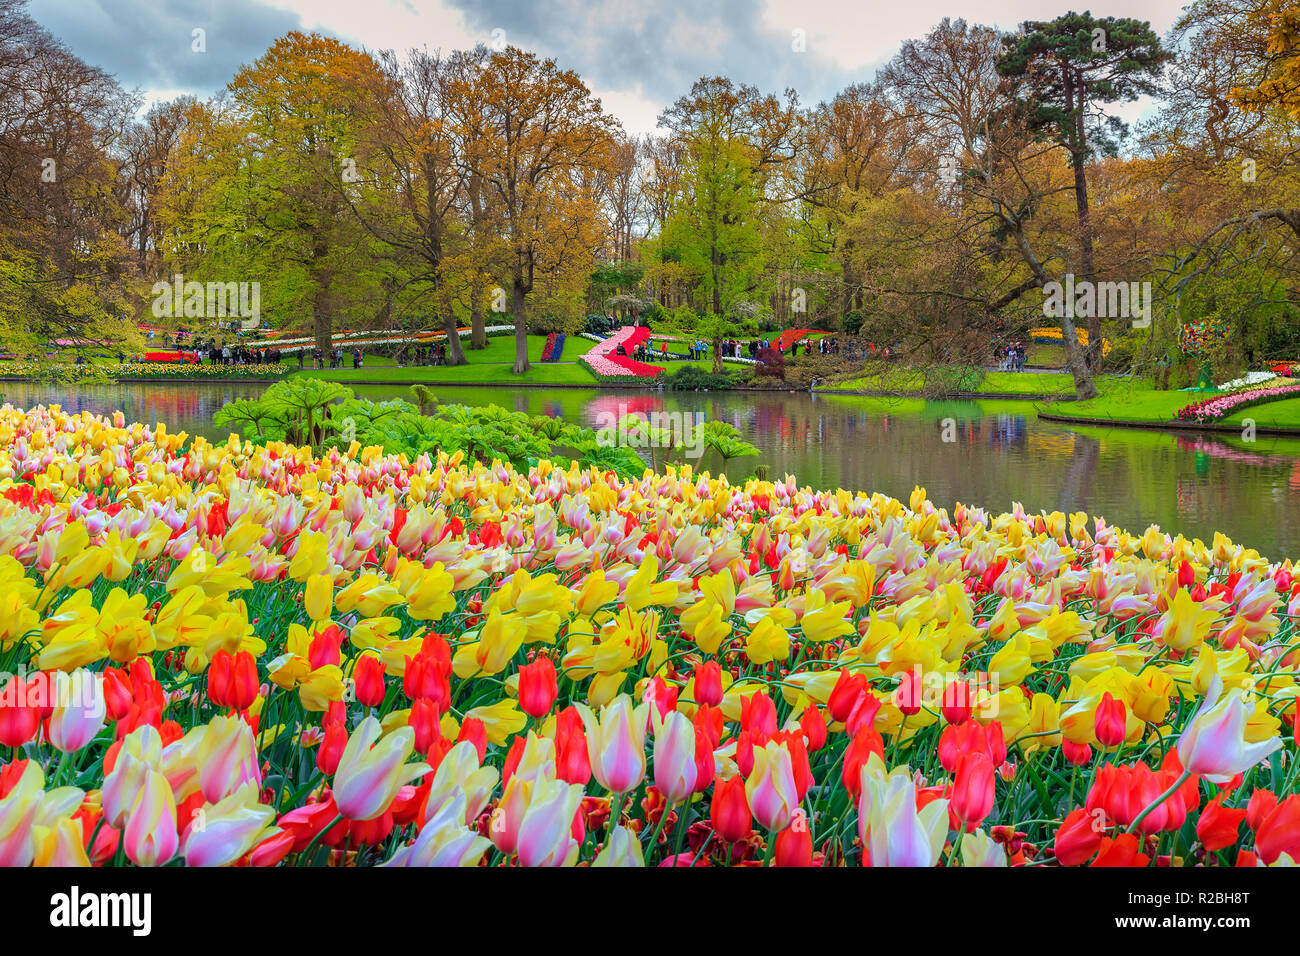 Erstaunlich frühling landschaft, fabelhafte Keukenhof Garten mit bunten frischen Tulpen, Frühling Blumen und Blick auf den See im Hintergrund, Lisse, Niederlande, Eu Stockfoto